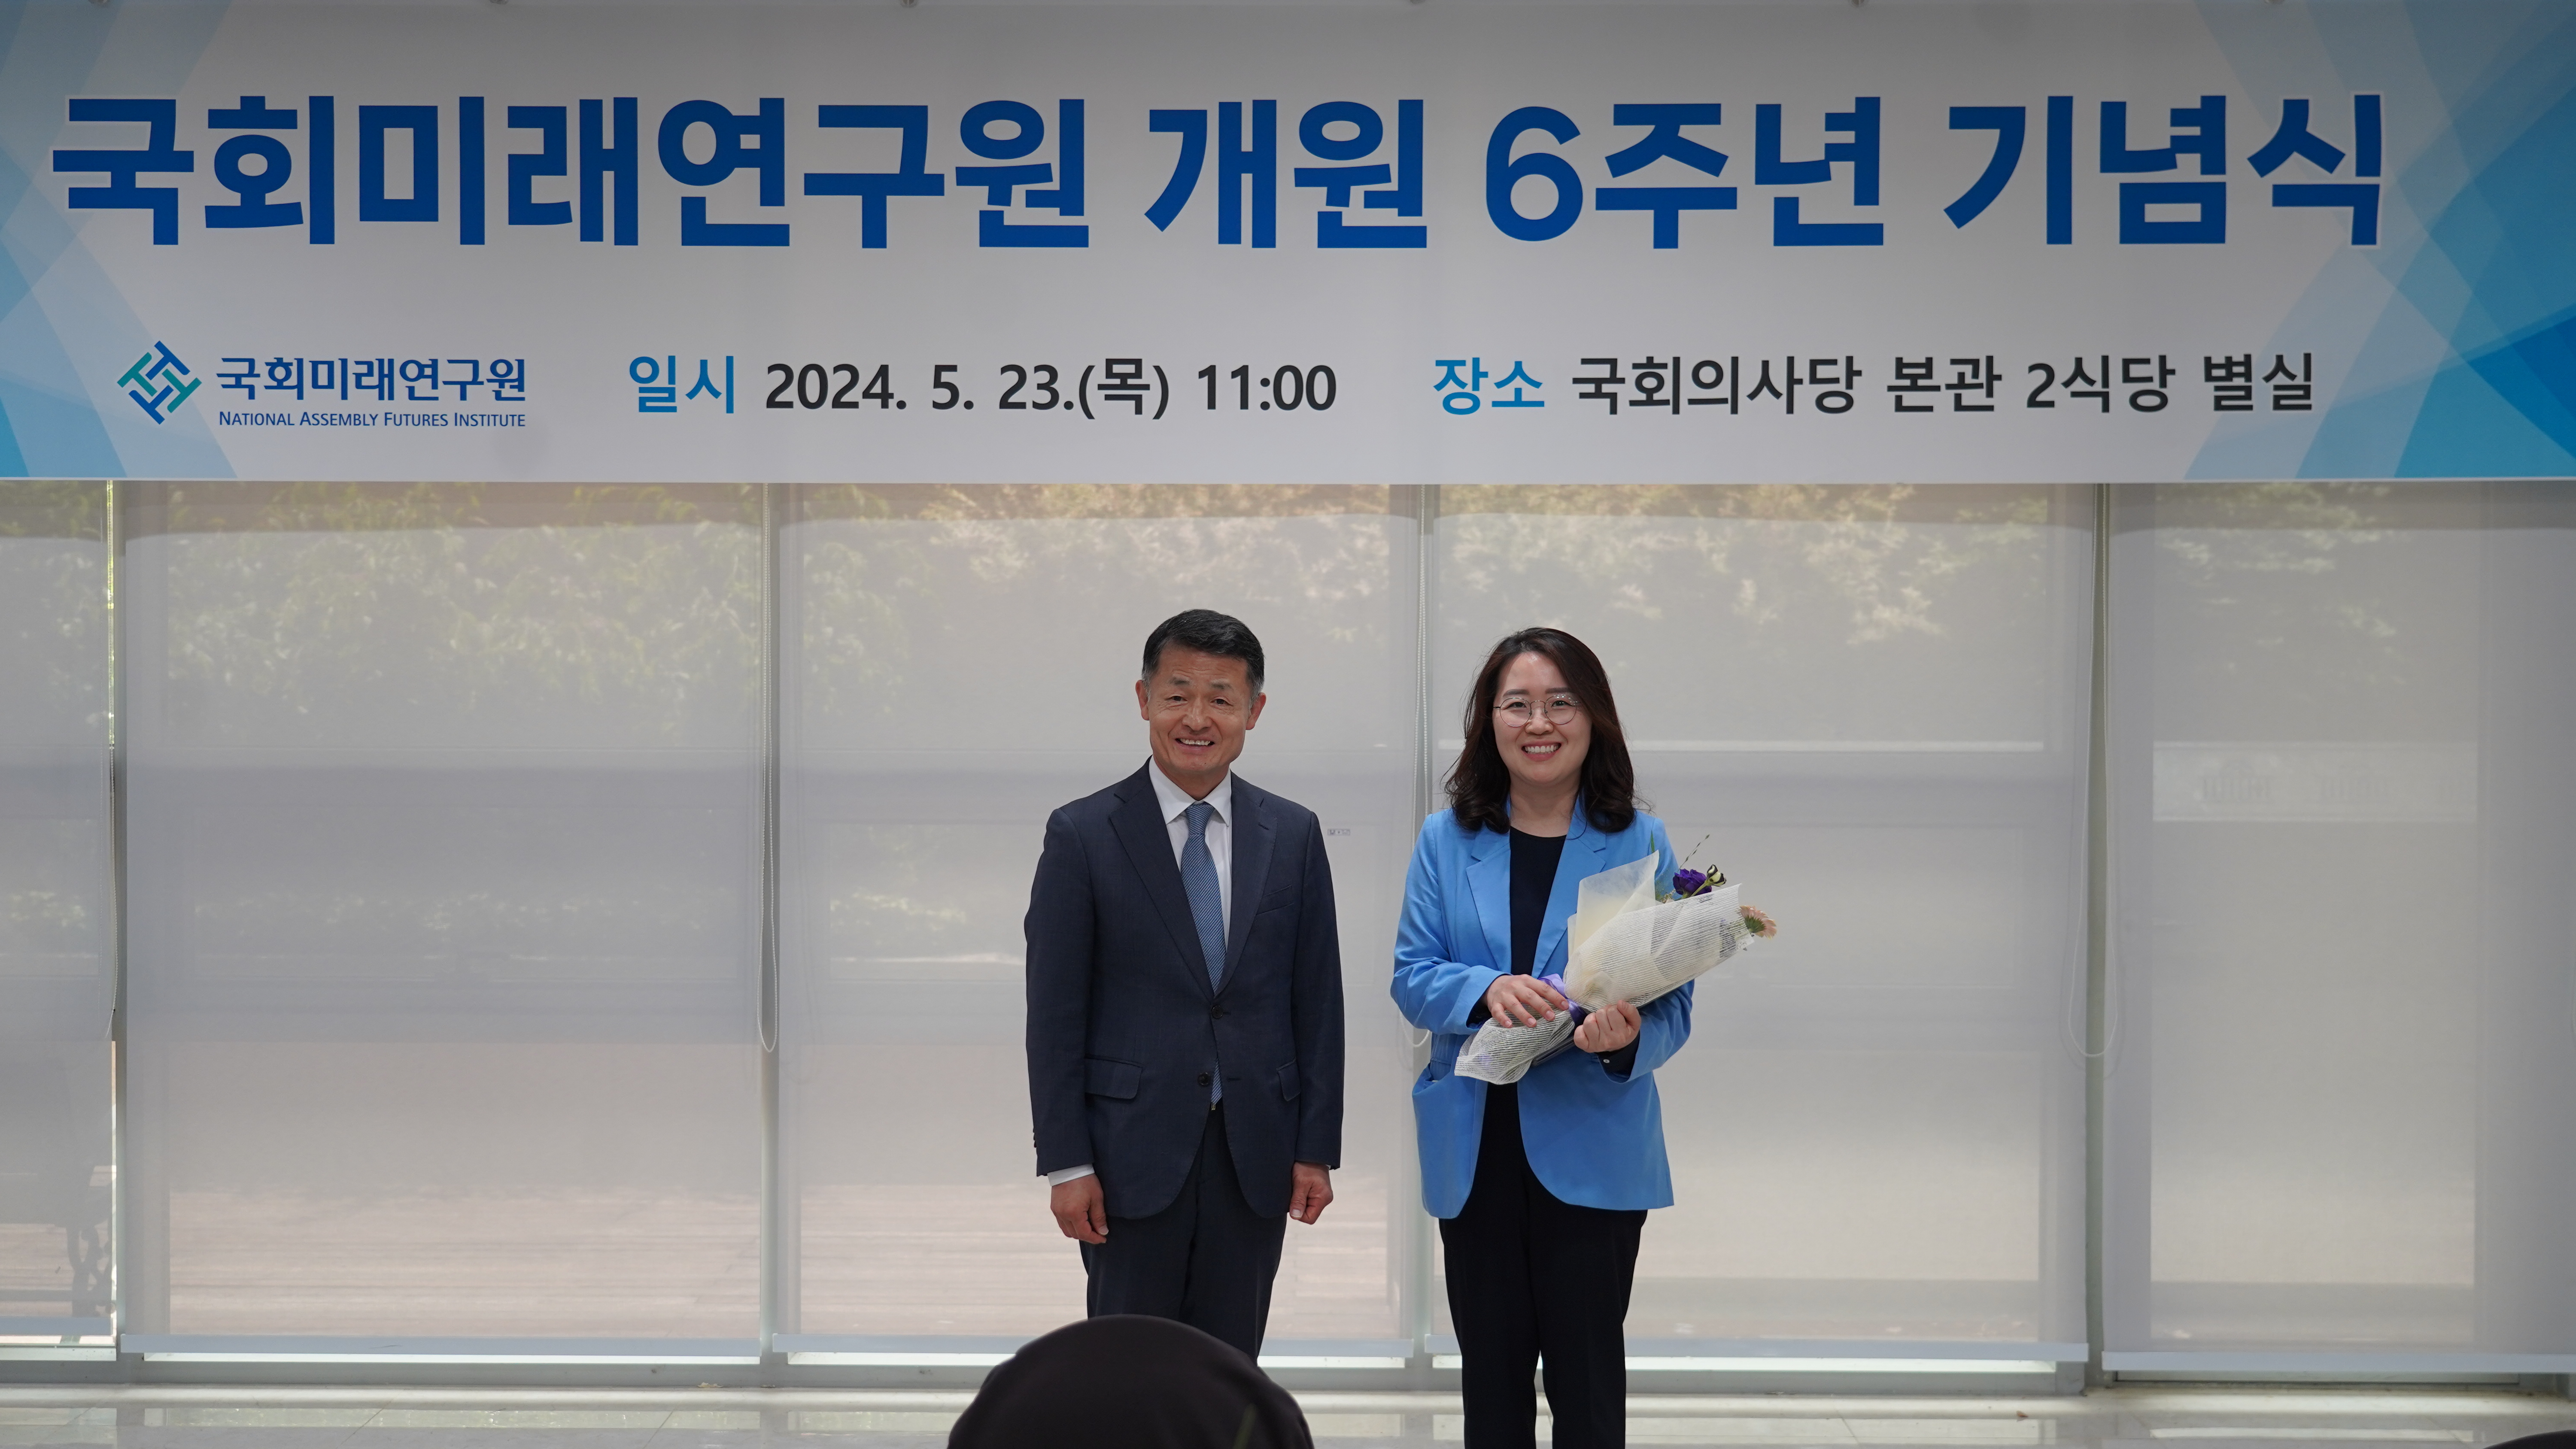 [05.23] 국회미래연구원, 개원 6주년 기념식 개최8